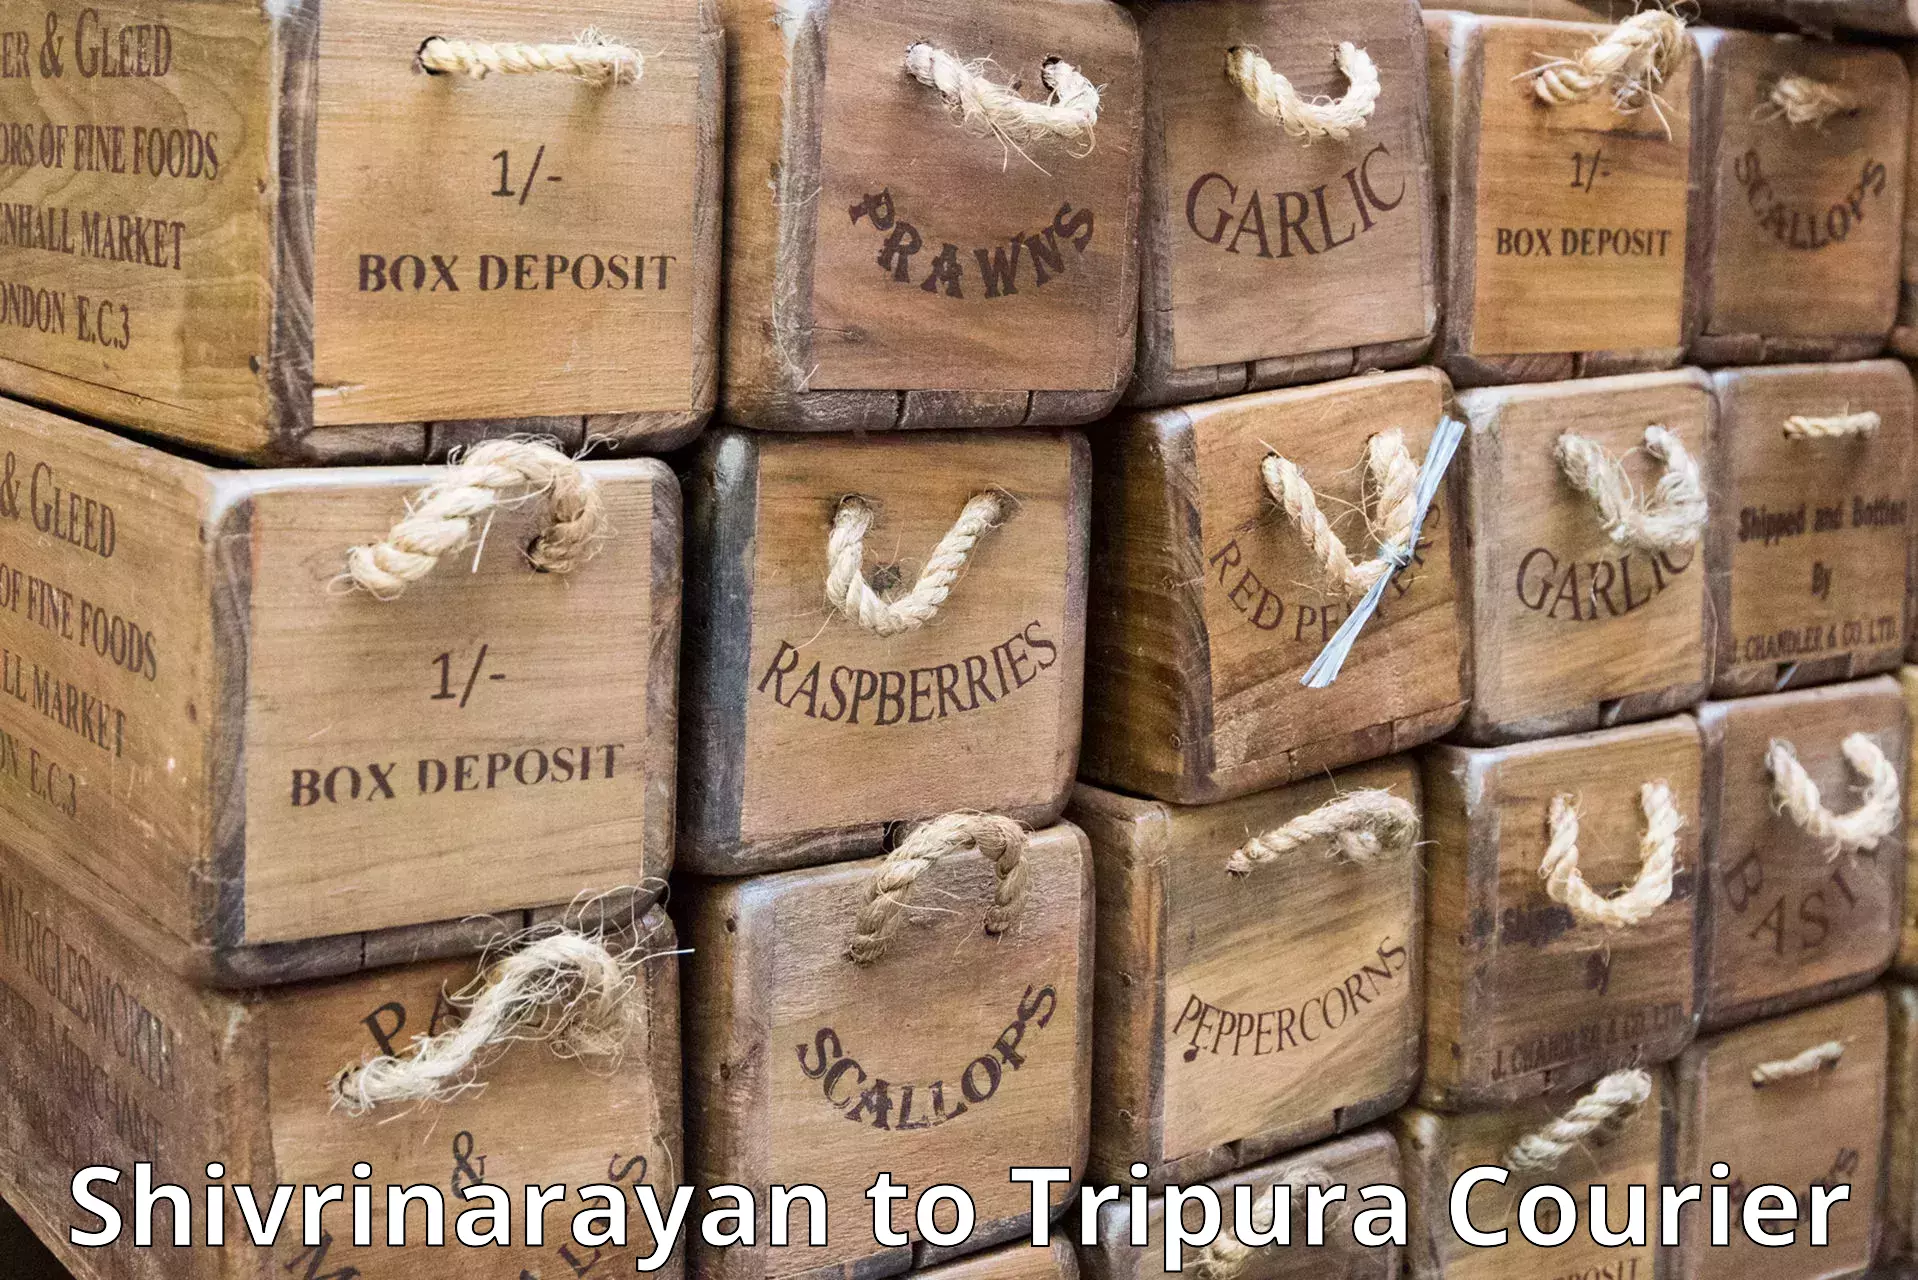 Speedy delivery service Shivrinarayan to North Tripura